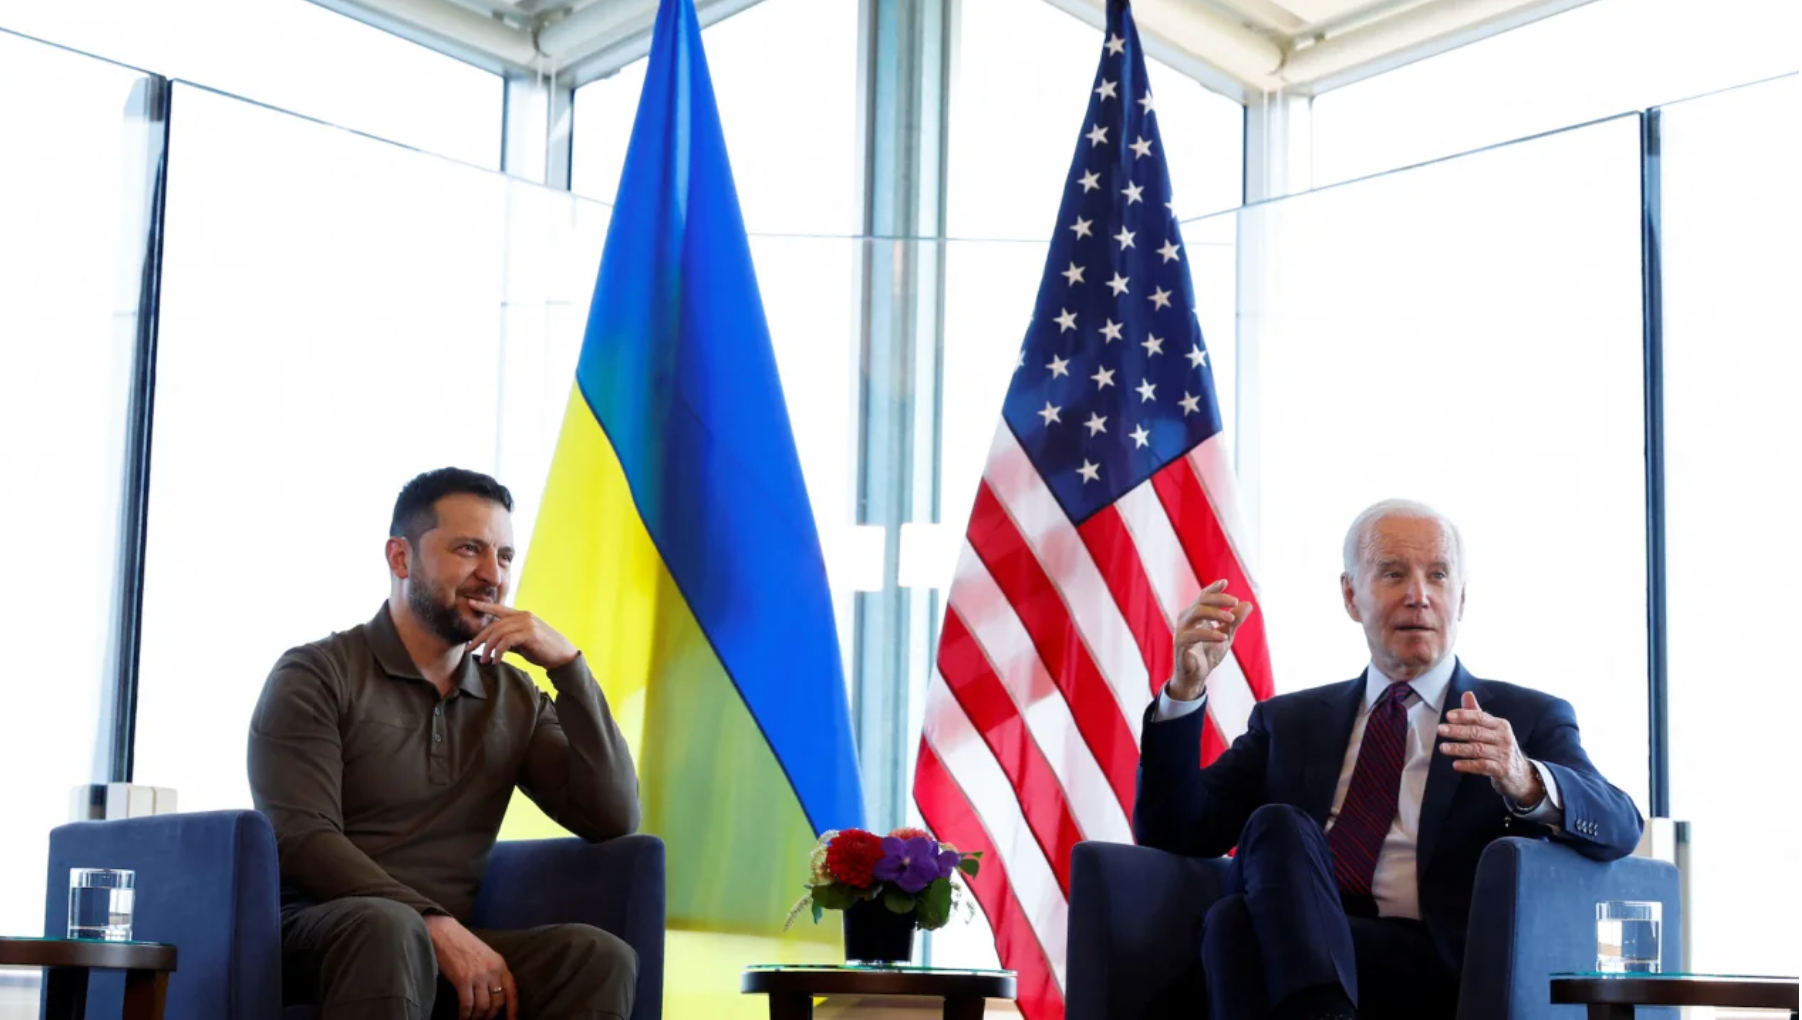 Tổng thống Mỹ Joe Biden gặp Tổng thống Ukraine Volodymyr Zelensky trong Hội nghị thượng đỉnh G7 ở Hiroshima, Nhật Bản. (Ảnh: Reuters)